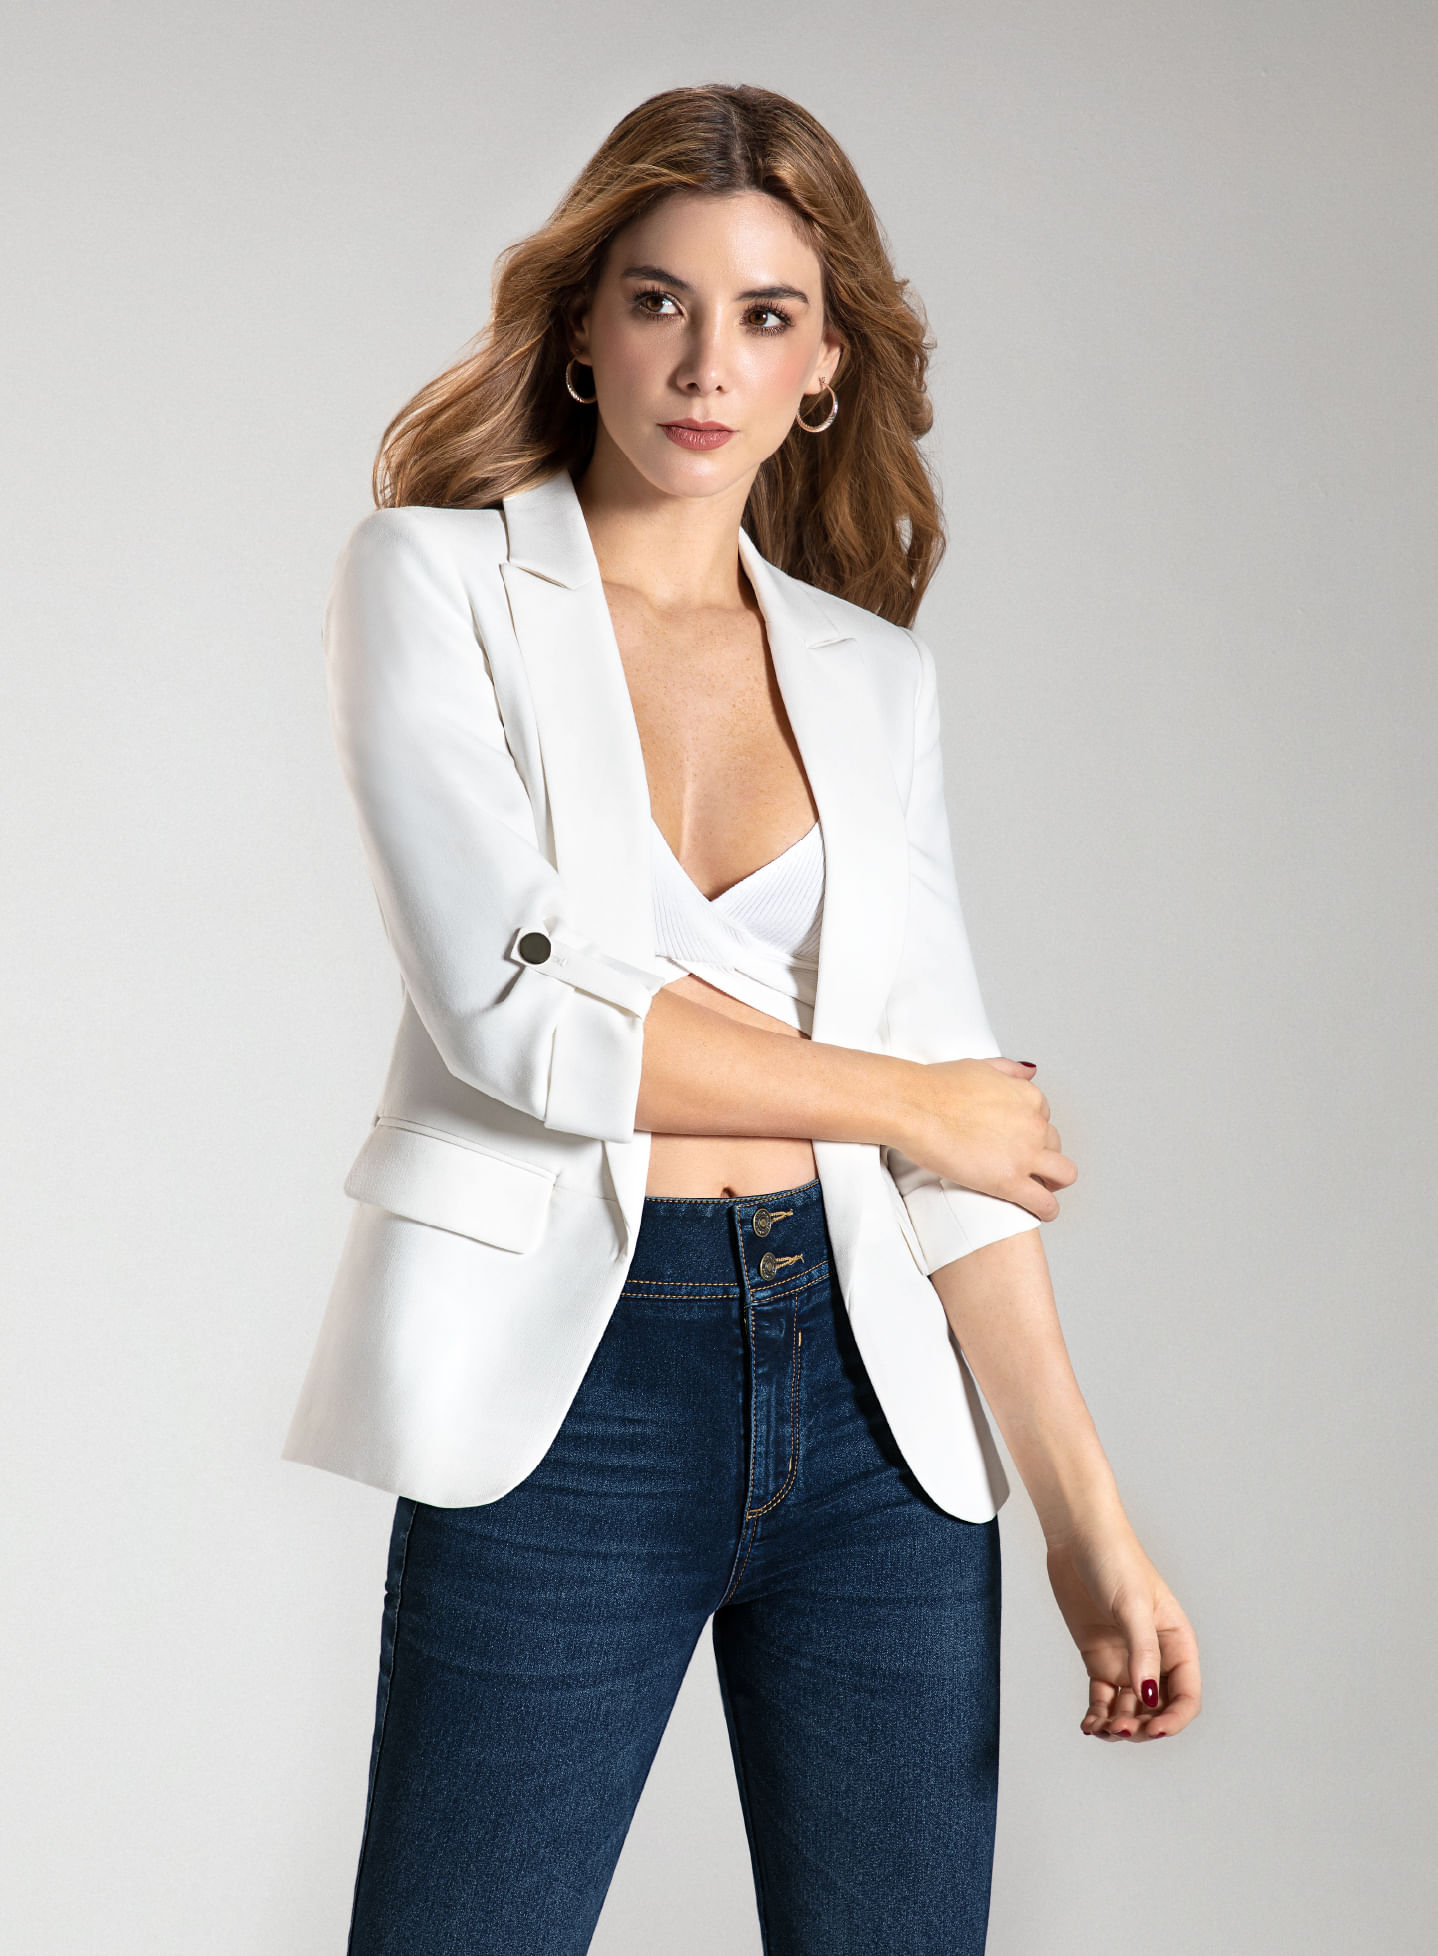 Foto en plano americano de mujer usando blazer blanco, crop top blanco cruzado y jean fit salma